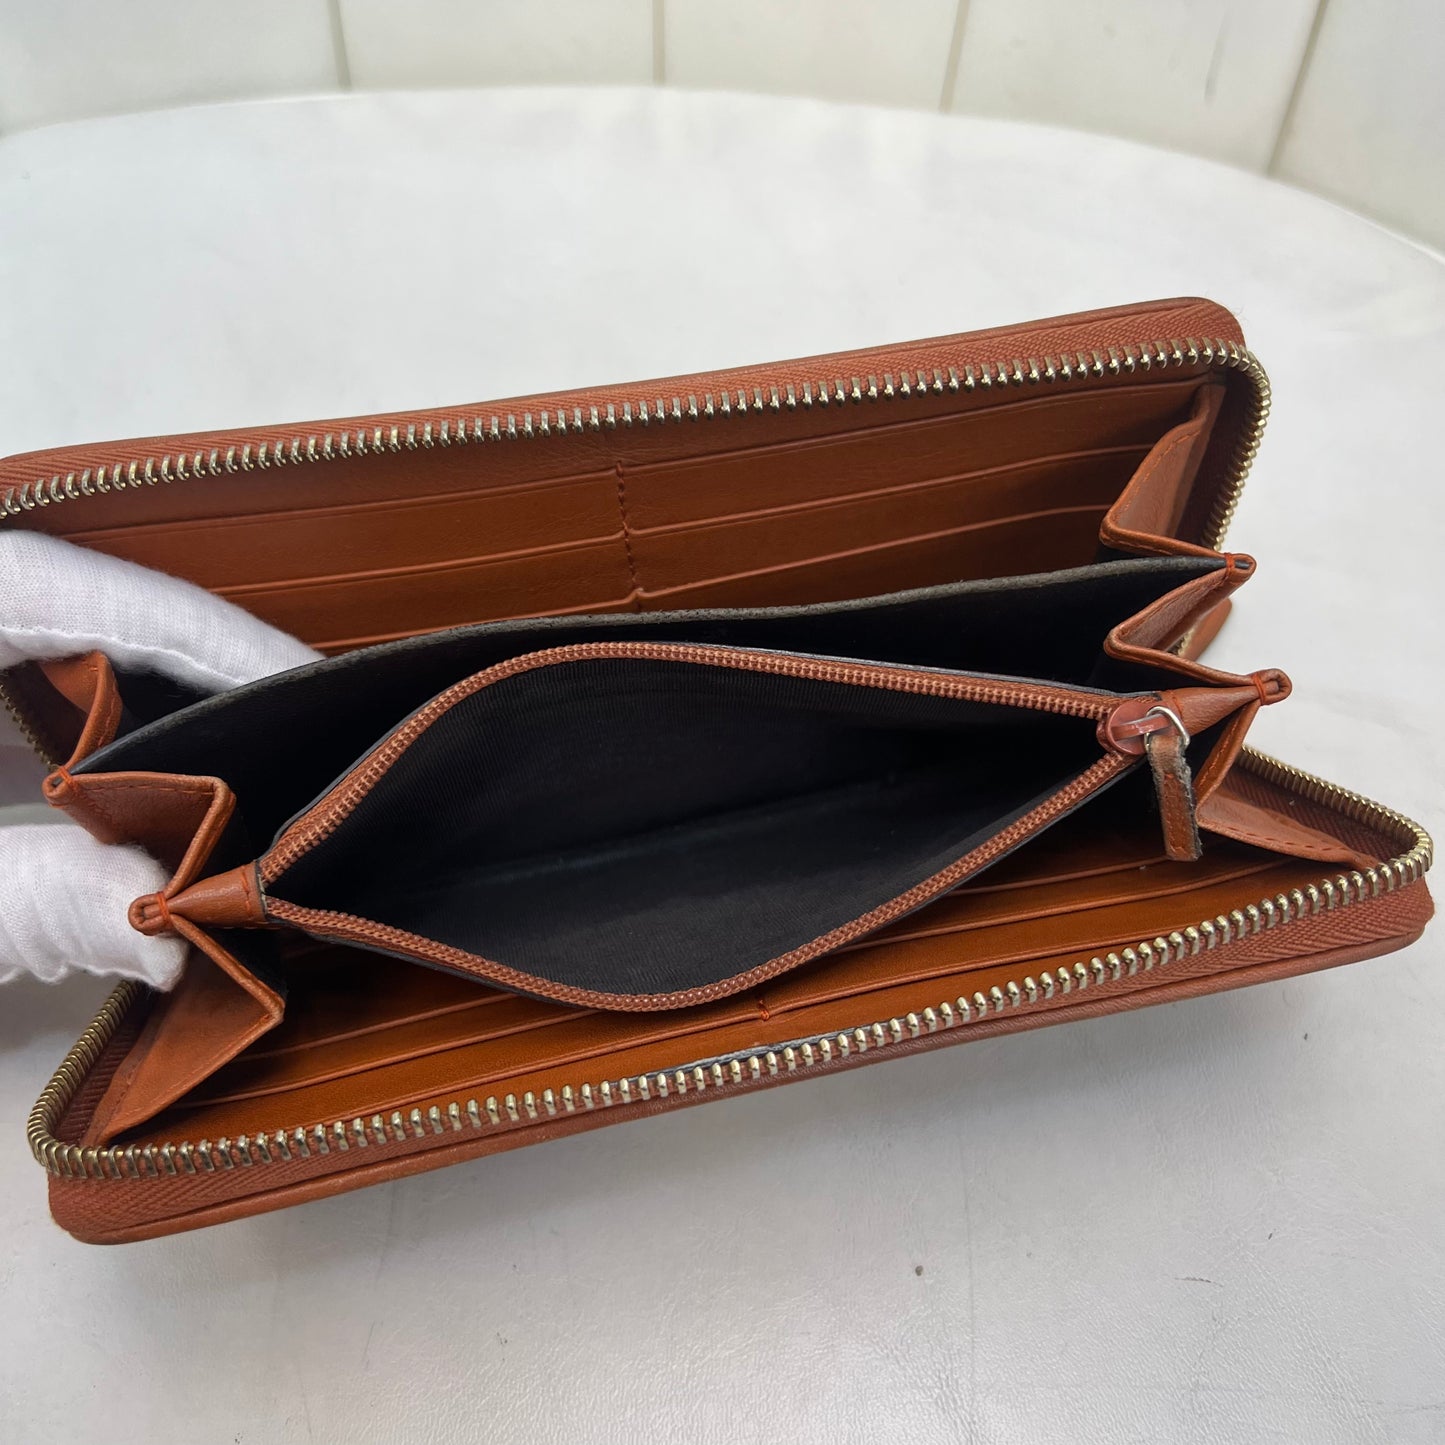 Gucci Zipper Wallet